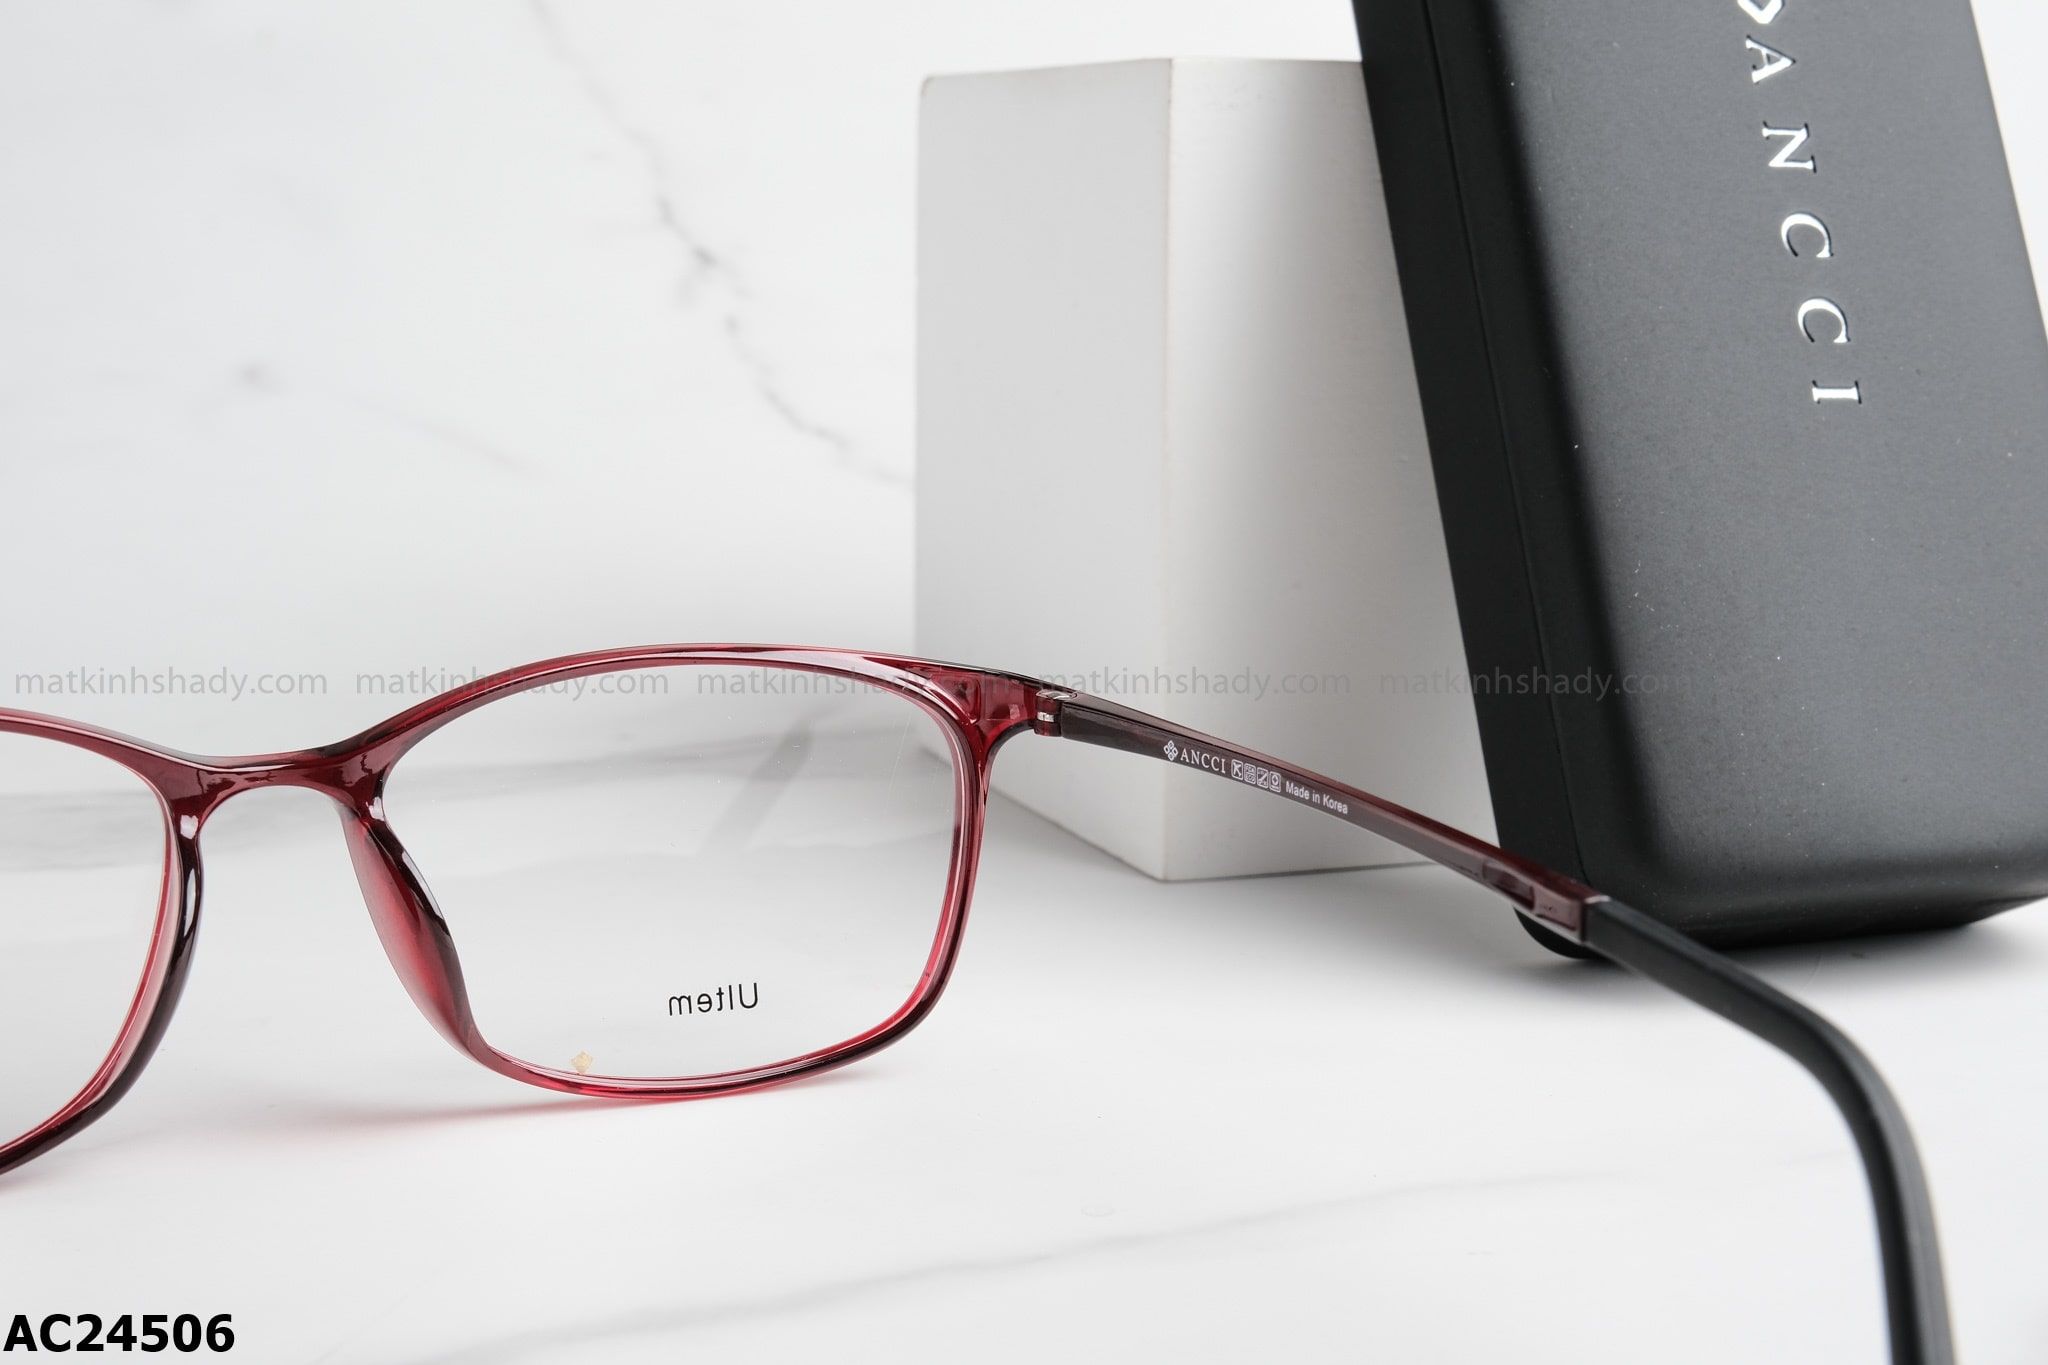  ANCCI Eyewear - Glasses - AC24506 